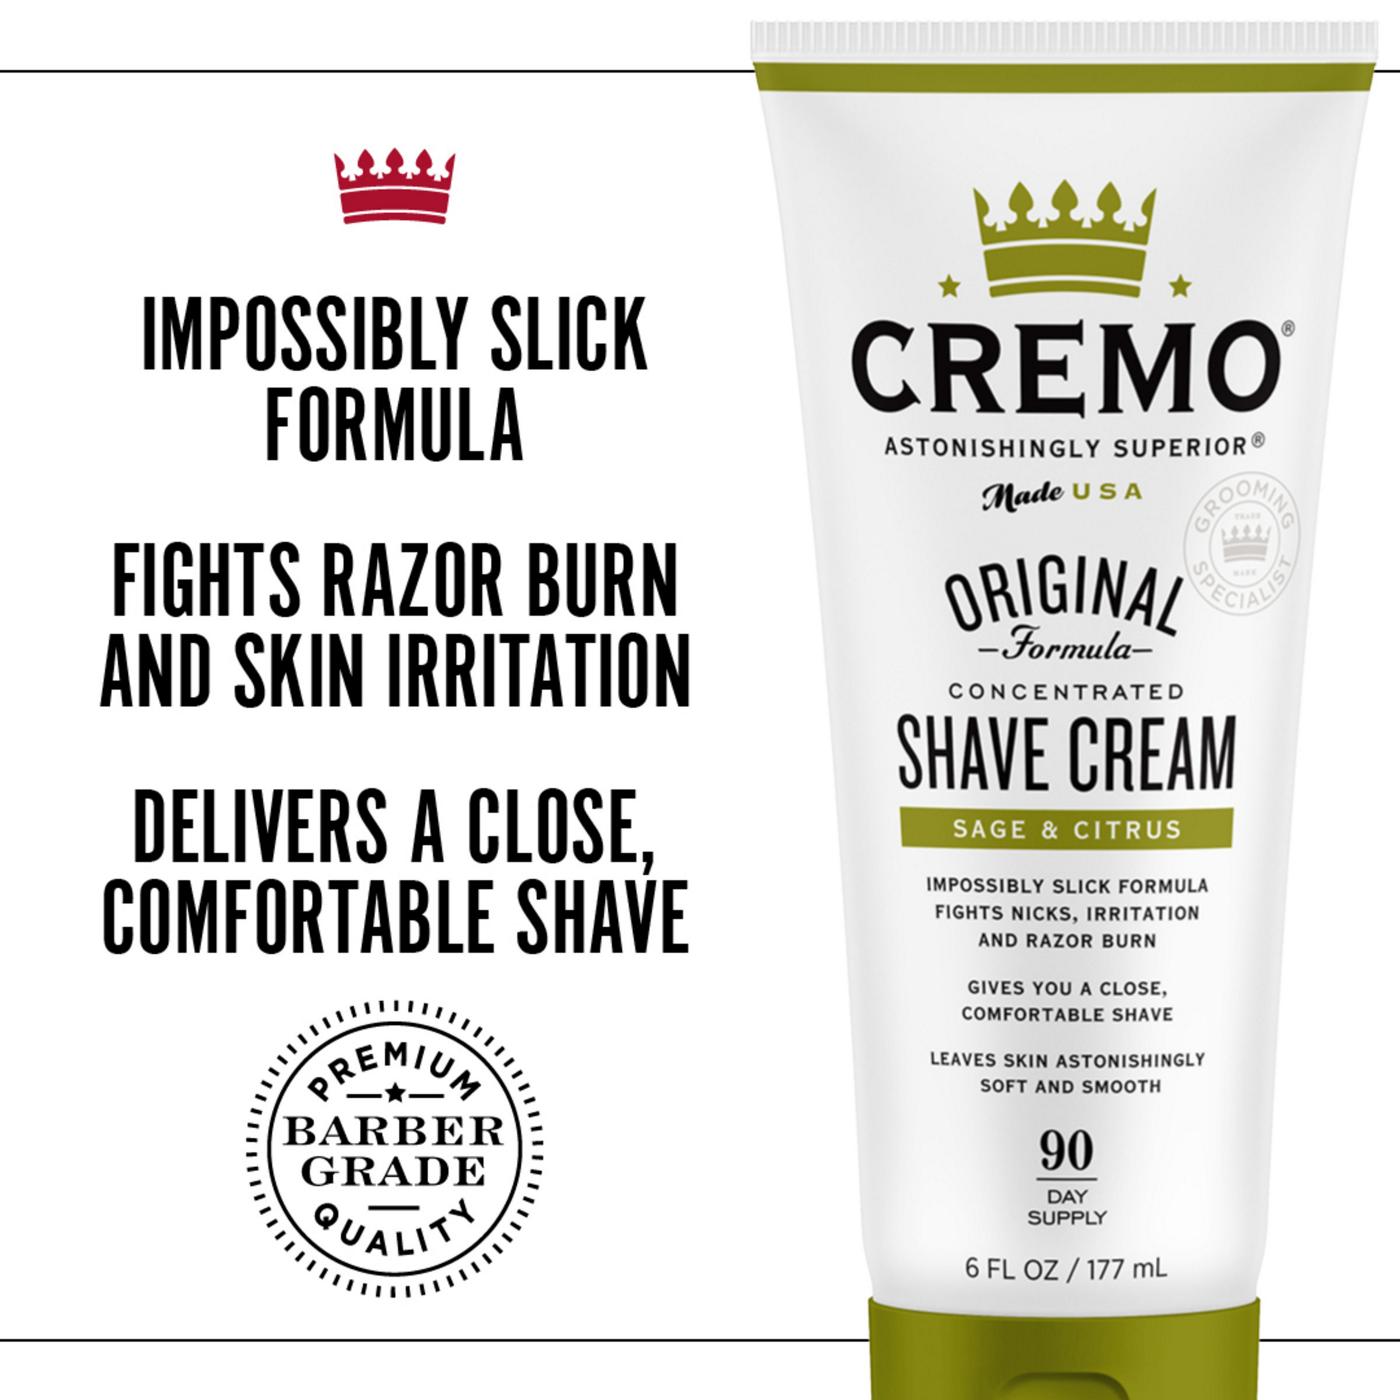 Cremo Shave Cream - Sage & Cistrus; image 4 of 6